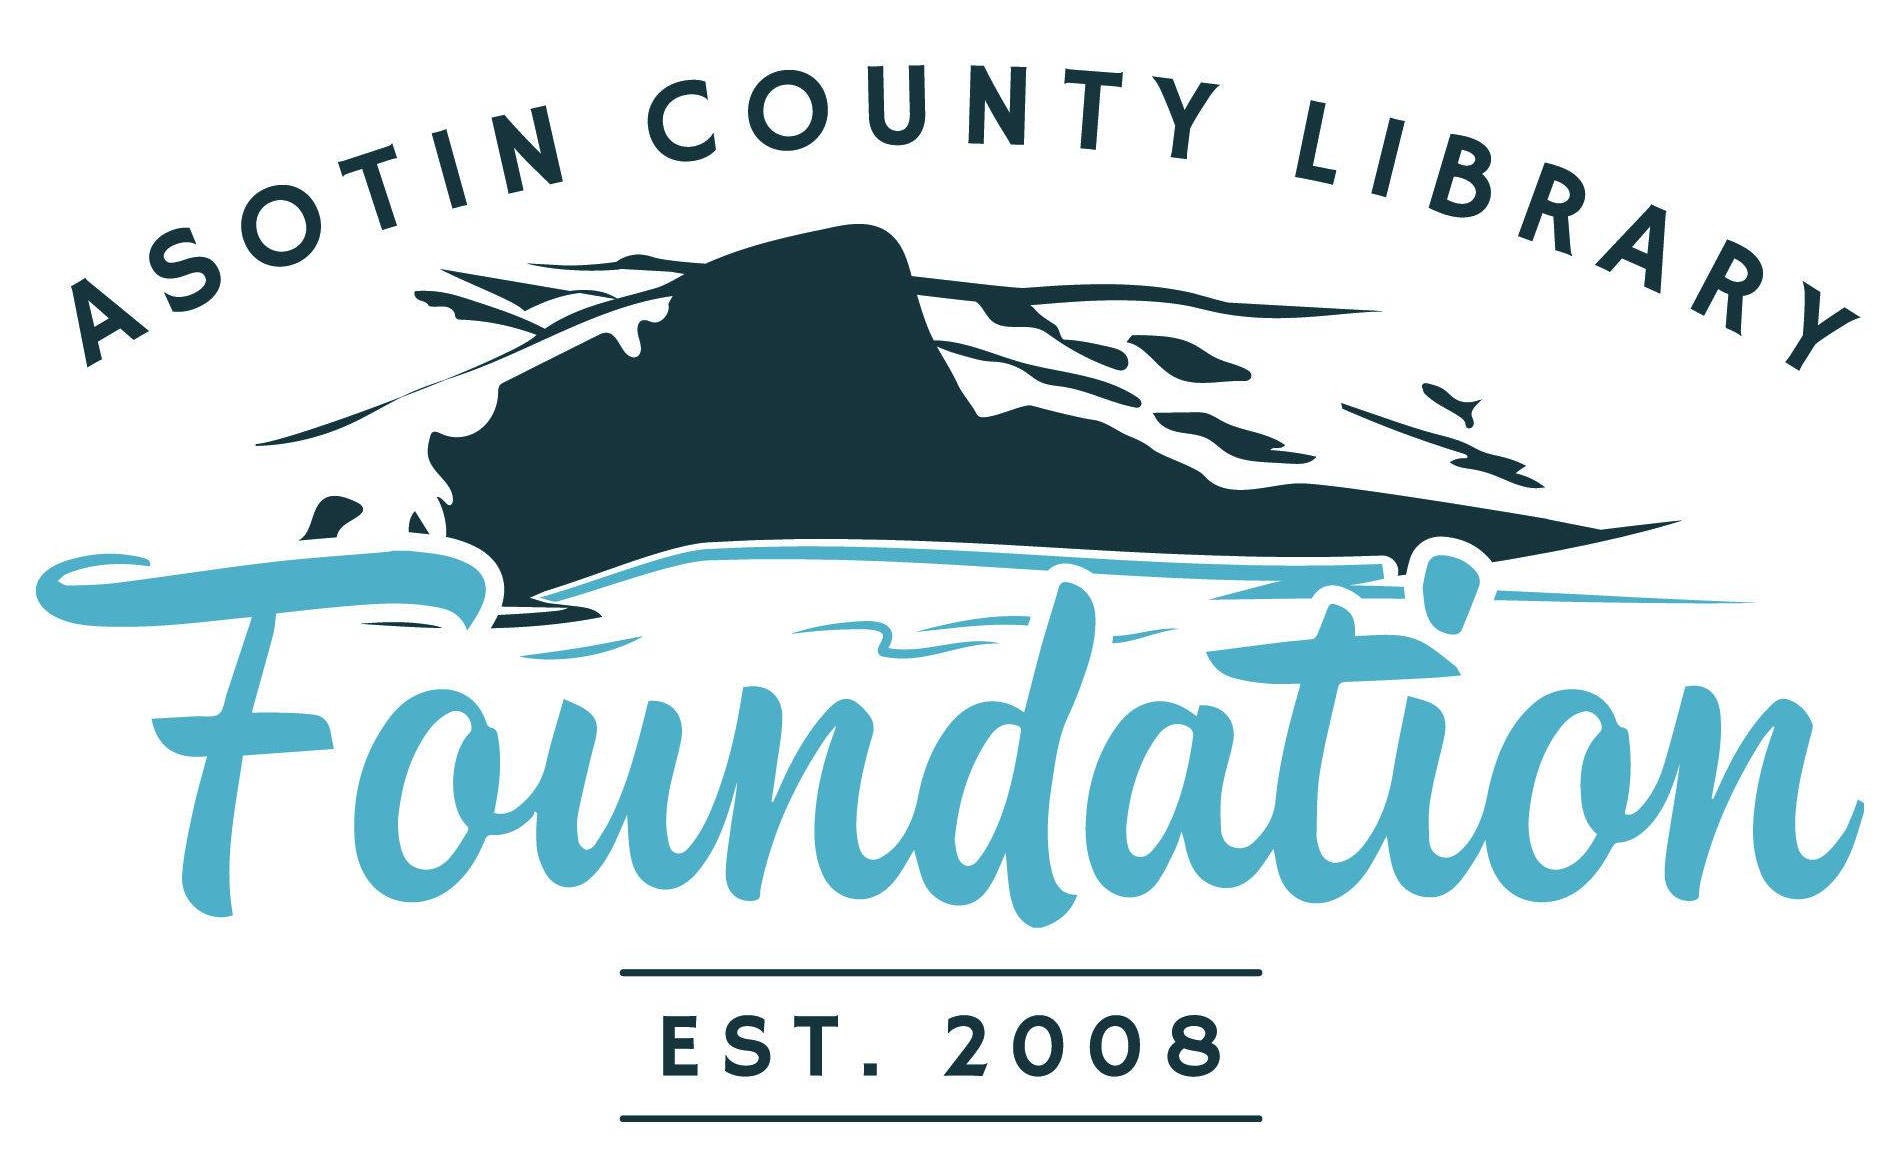 Asotin County Library Foundation EST. 2008 logo